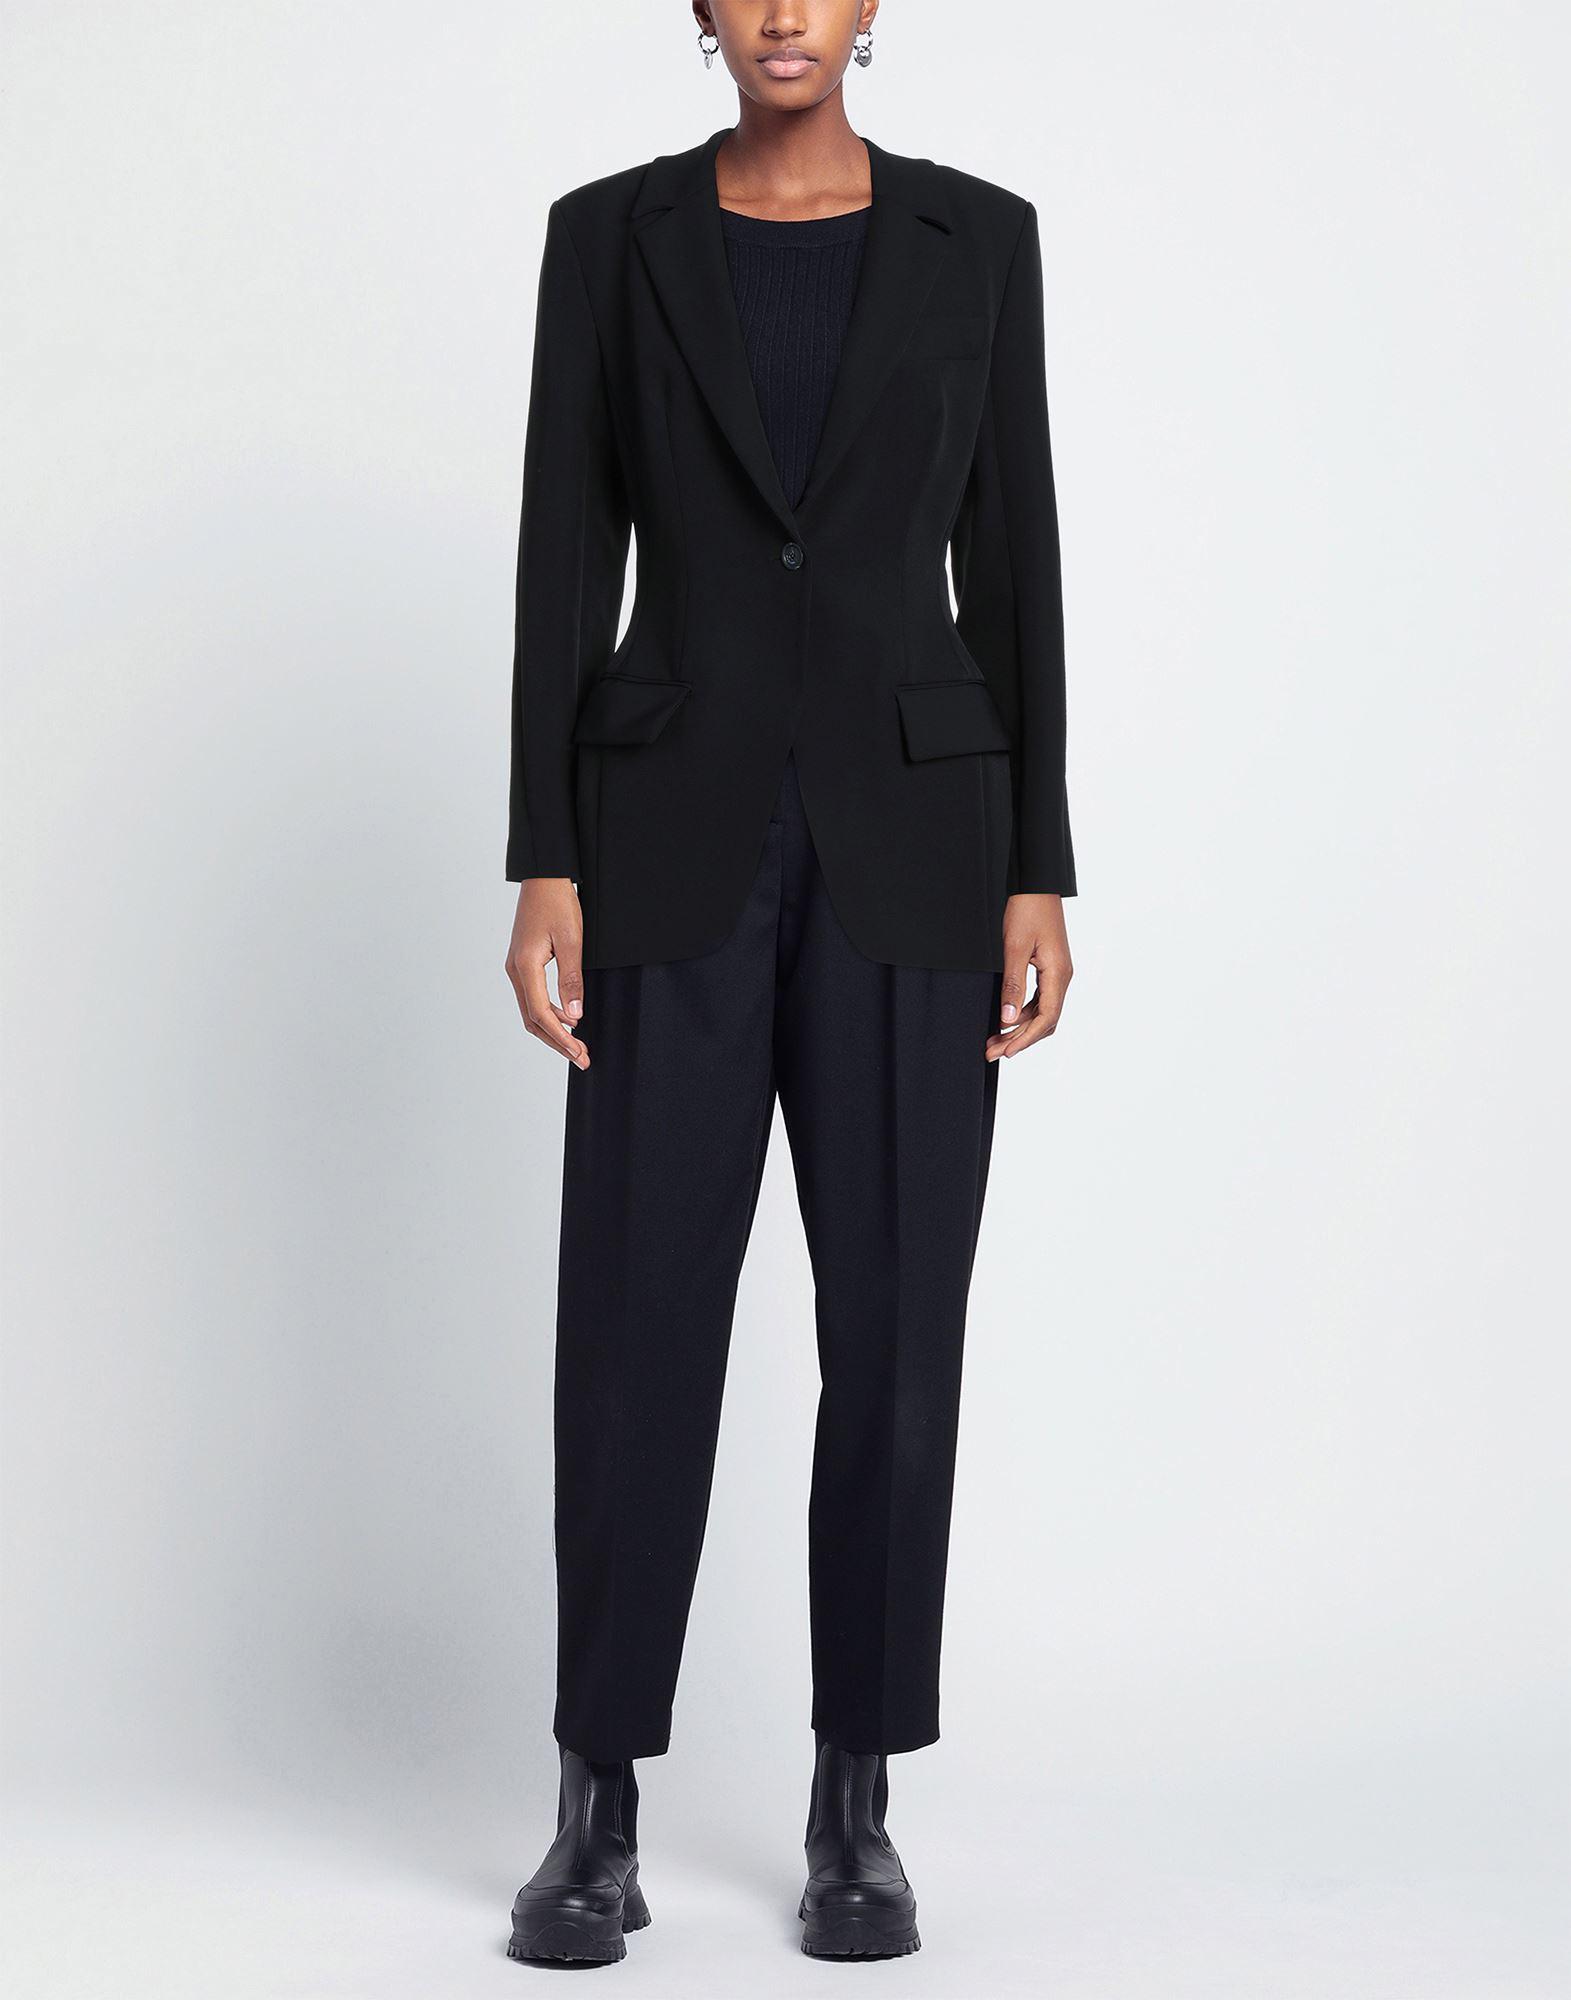 Women's Black Suit Jacket